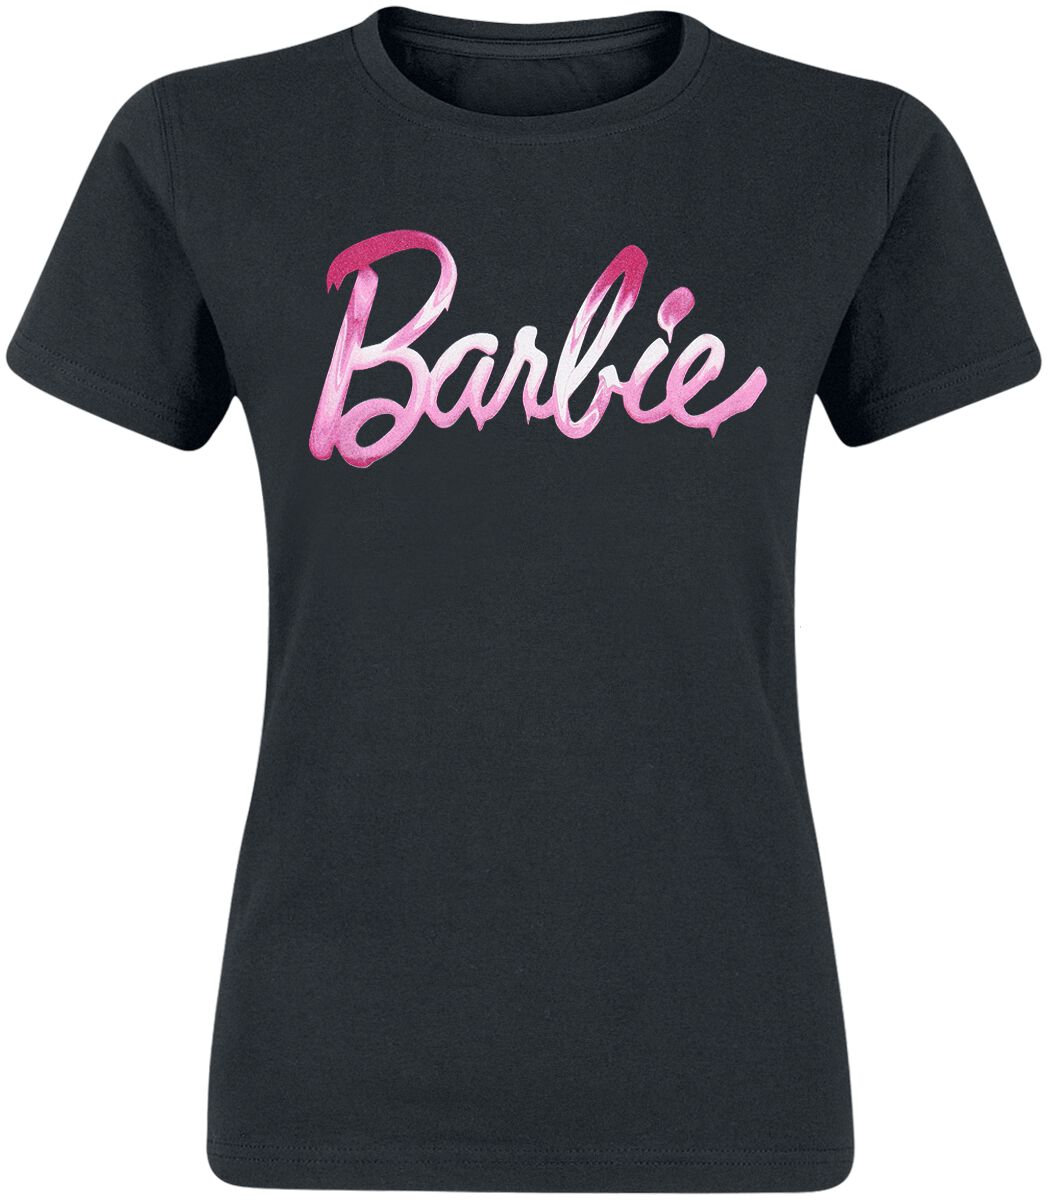 Barbie Melted T-Shirt schwarz in XL